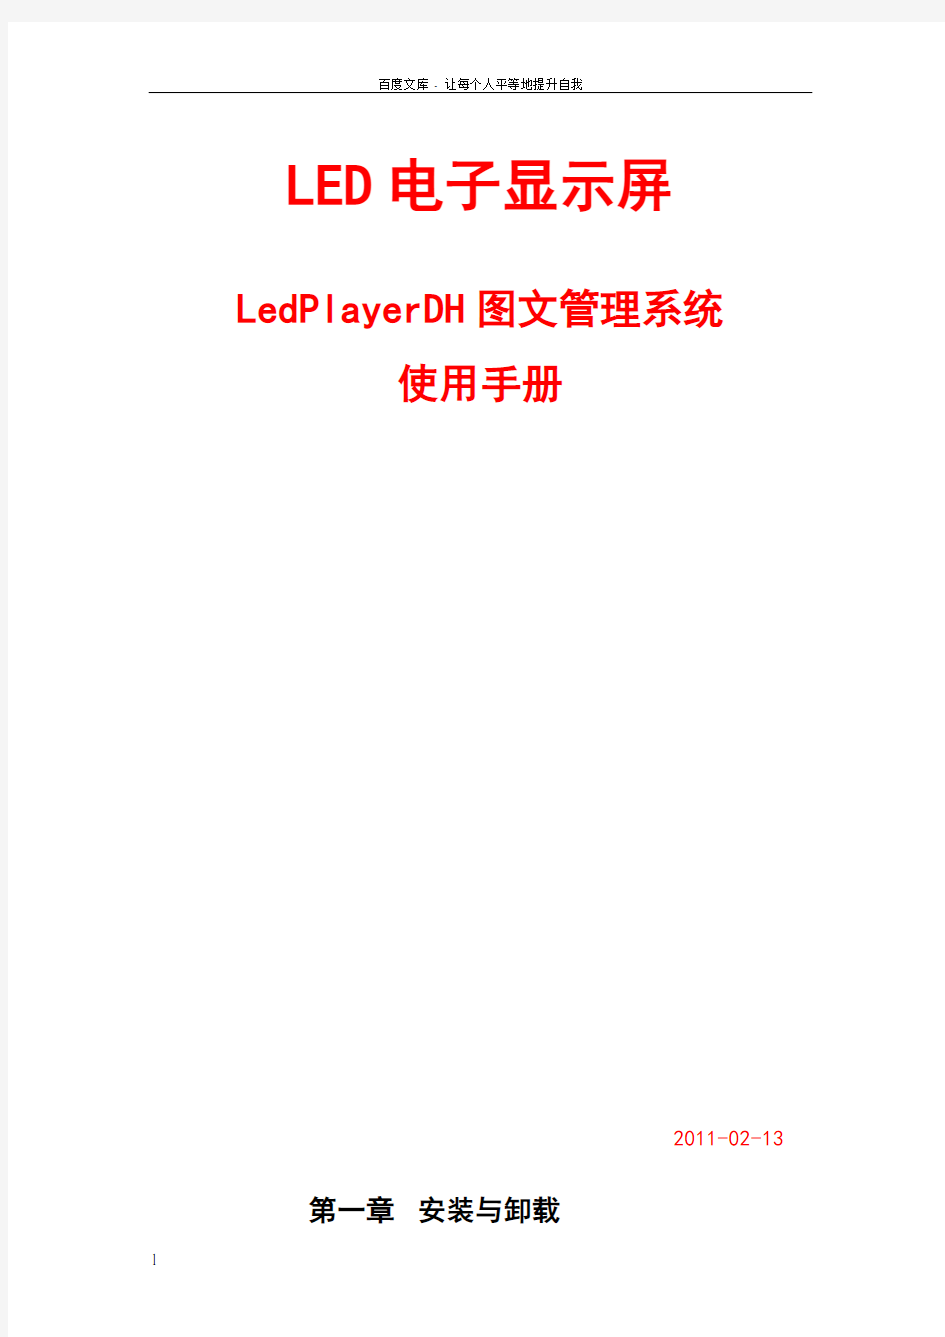 LedPlayerDH管理系统使用手册